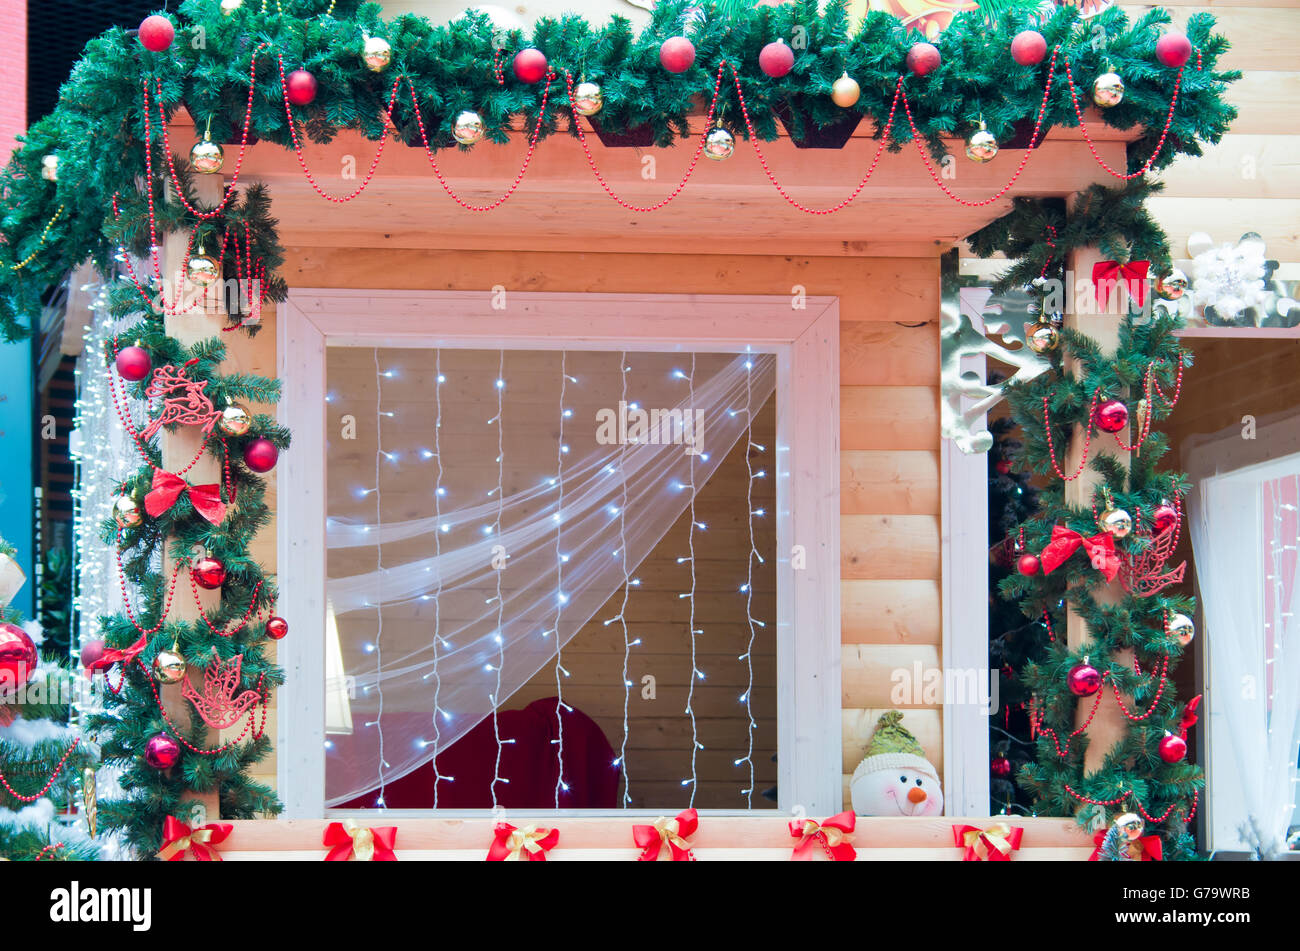 es suficiente Movimiento Bombardeo Ventana decorada en estilo navideño Navidad guirnaldas, cintas, lazos,  bolas de Navidad y ramas de abeto Fotografía de stock - Alamy